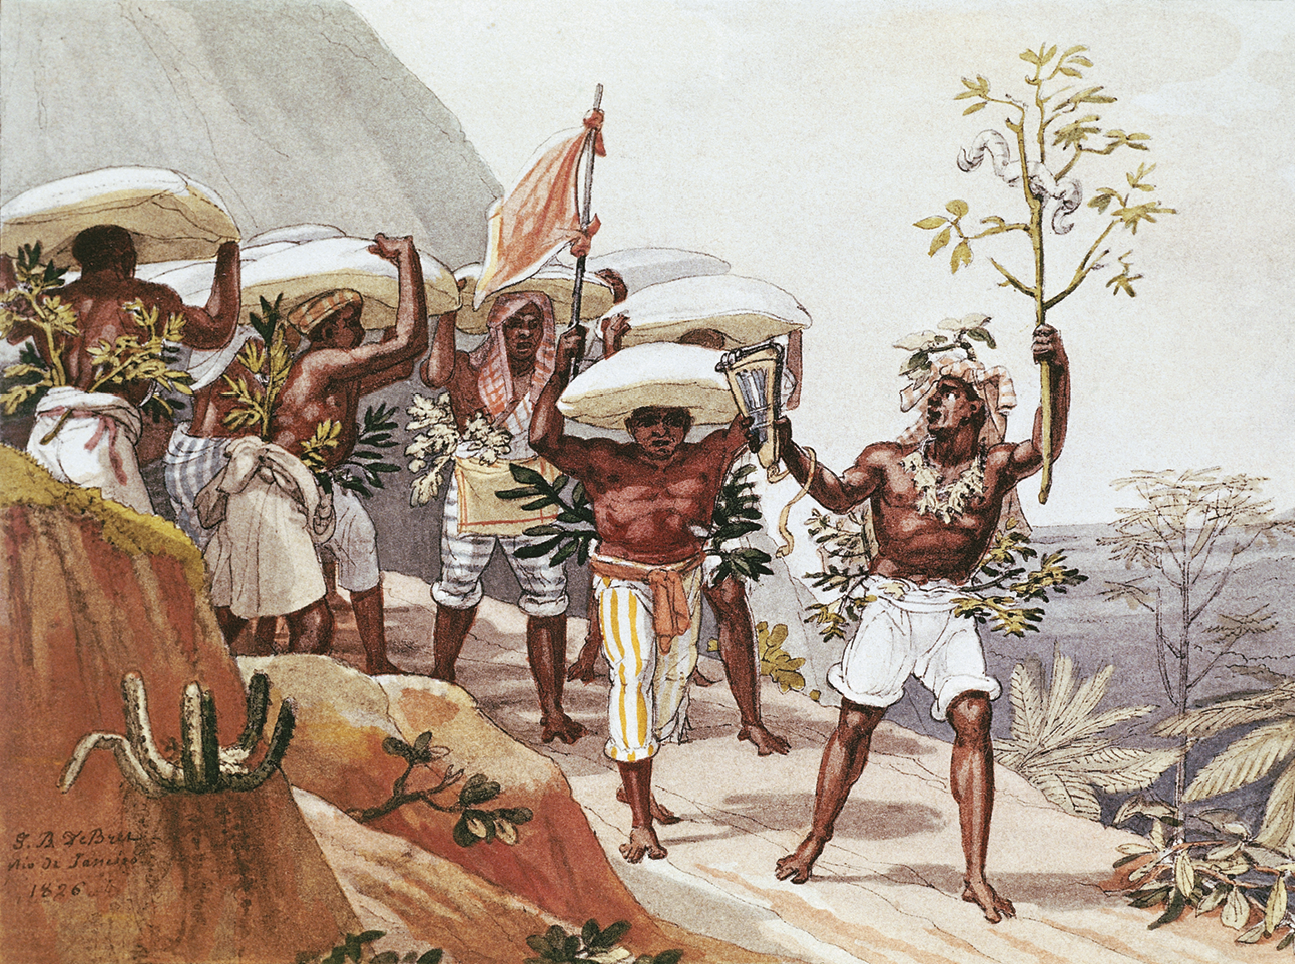 Pintura. Homens negros, usando calça, estão segurando sacas sobre a cabeça em uma estrada rochosa. Um dos homens está à frente dos demais carregando um galho de árvore com as mãos.